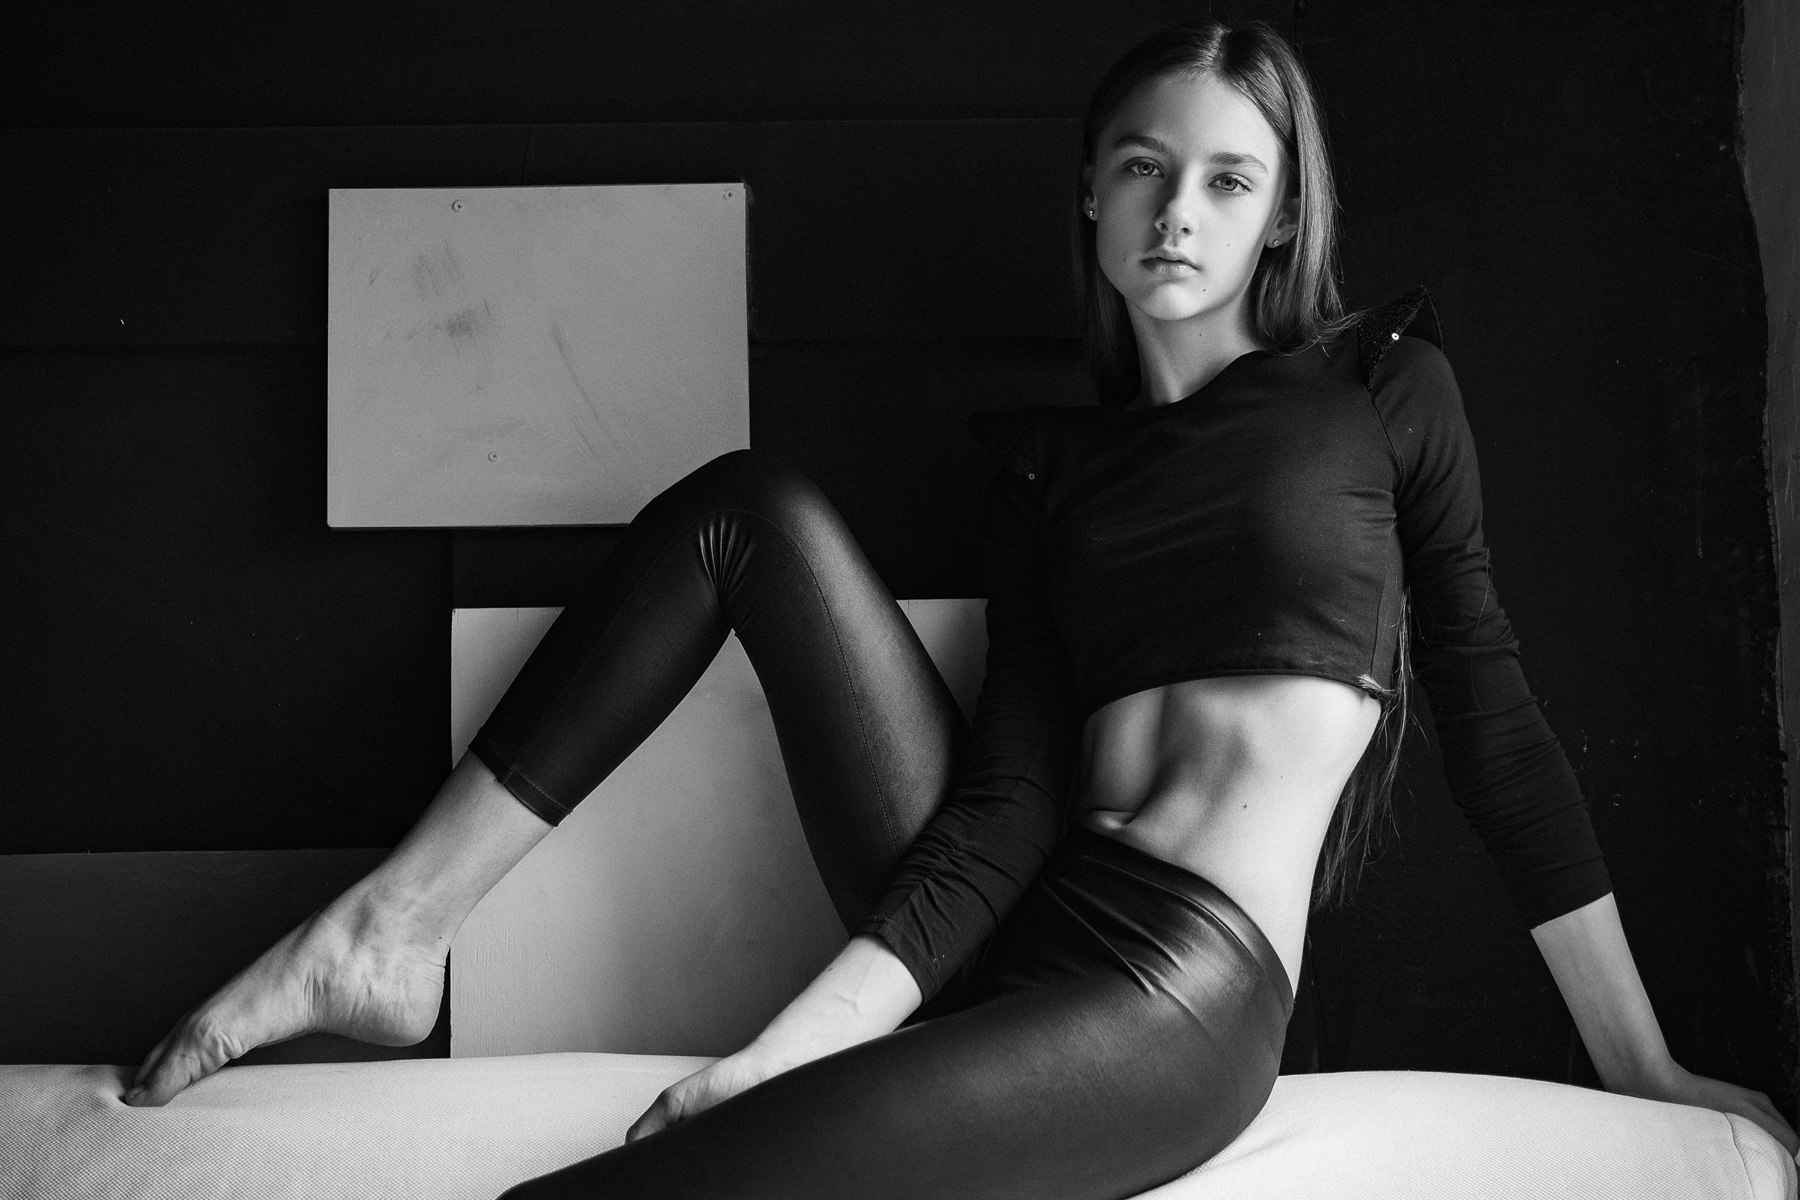 Barefoot Women Model Monochrome Aleksey Trifonov Leather Pants Black Clothing 1800x1200